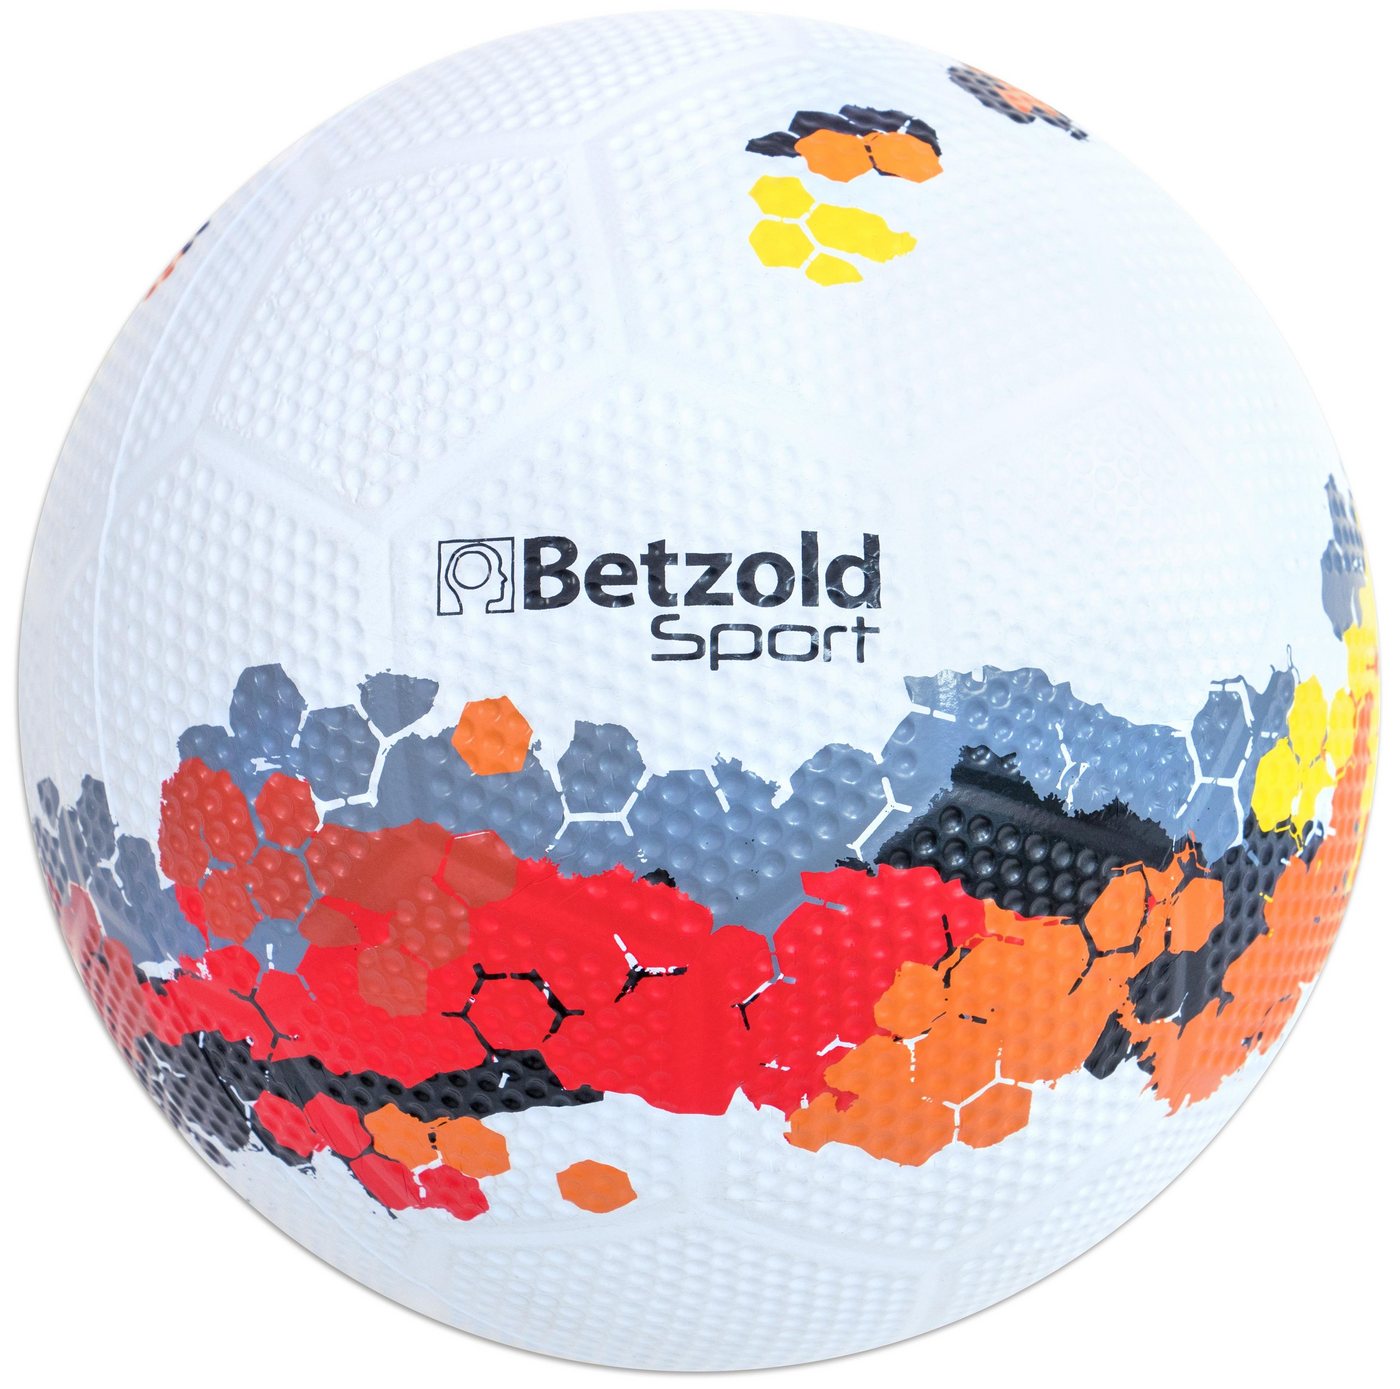 Betzold Sport Fußball Schulhof Fußball - Bälle hochwertige Fußbälle in Größe 5, Besonders robust von Betzold Sport